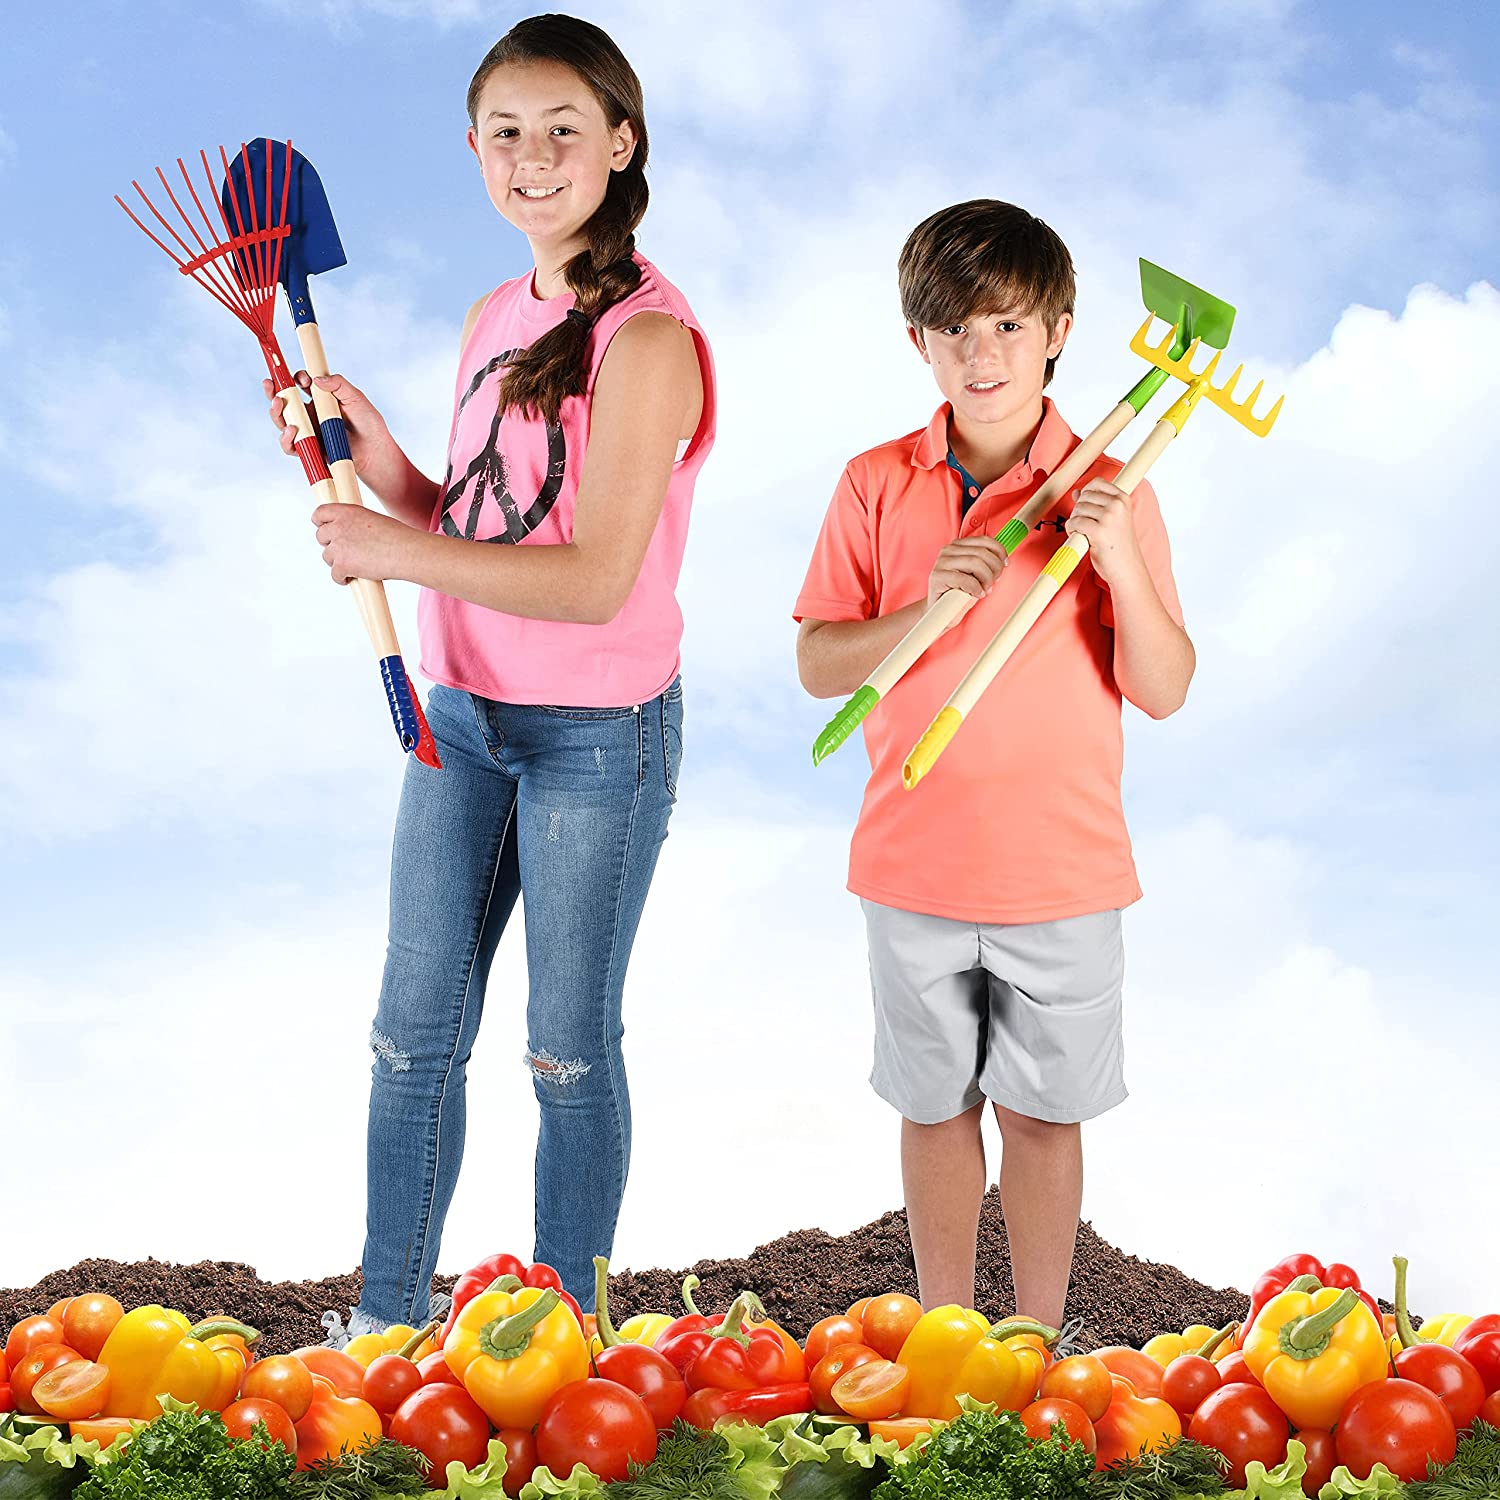 Play22 Kids Garden Tool Set Toy 4-Piece - Shovel, Rake, Hoe, Leaf Rake –  play22usa